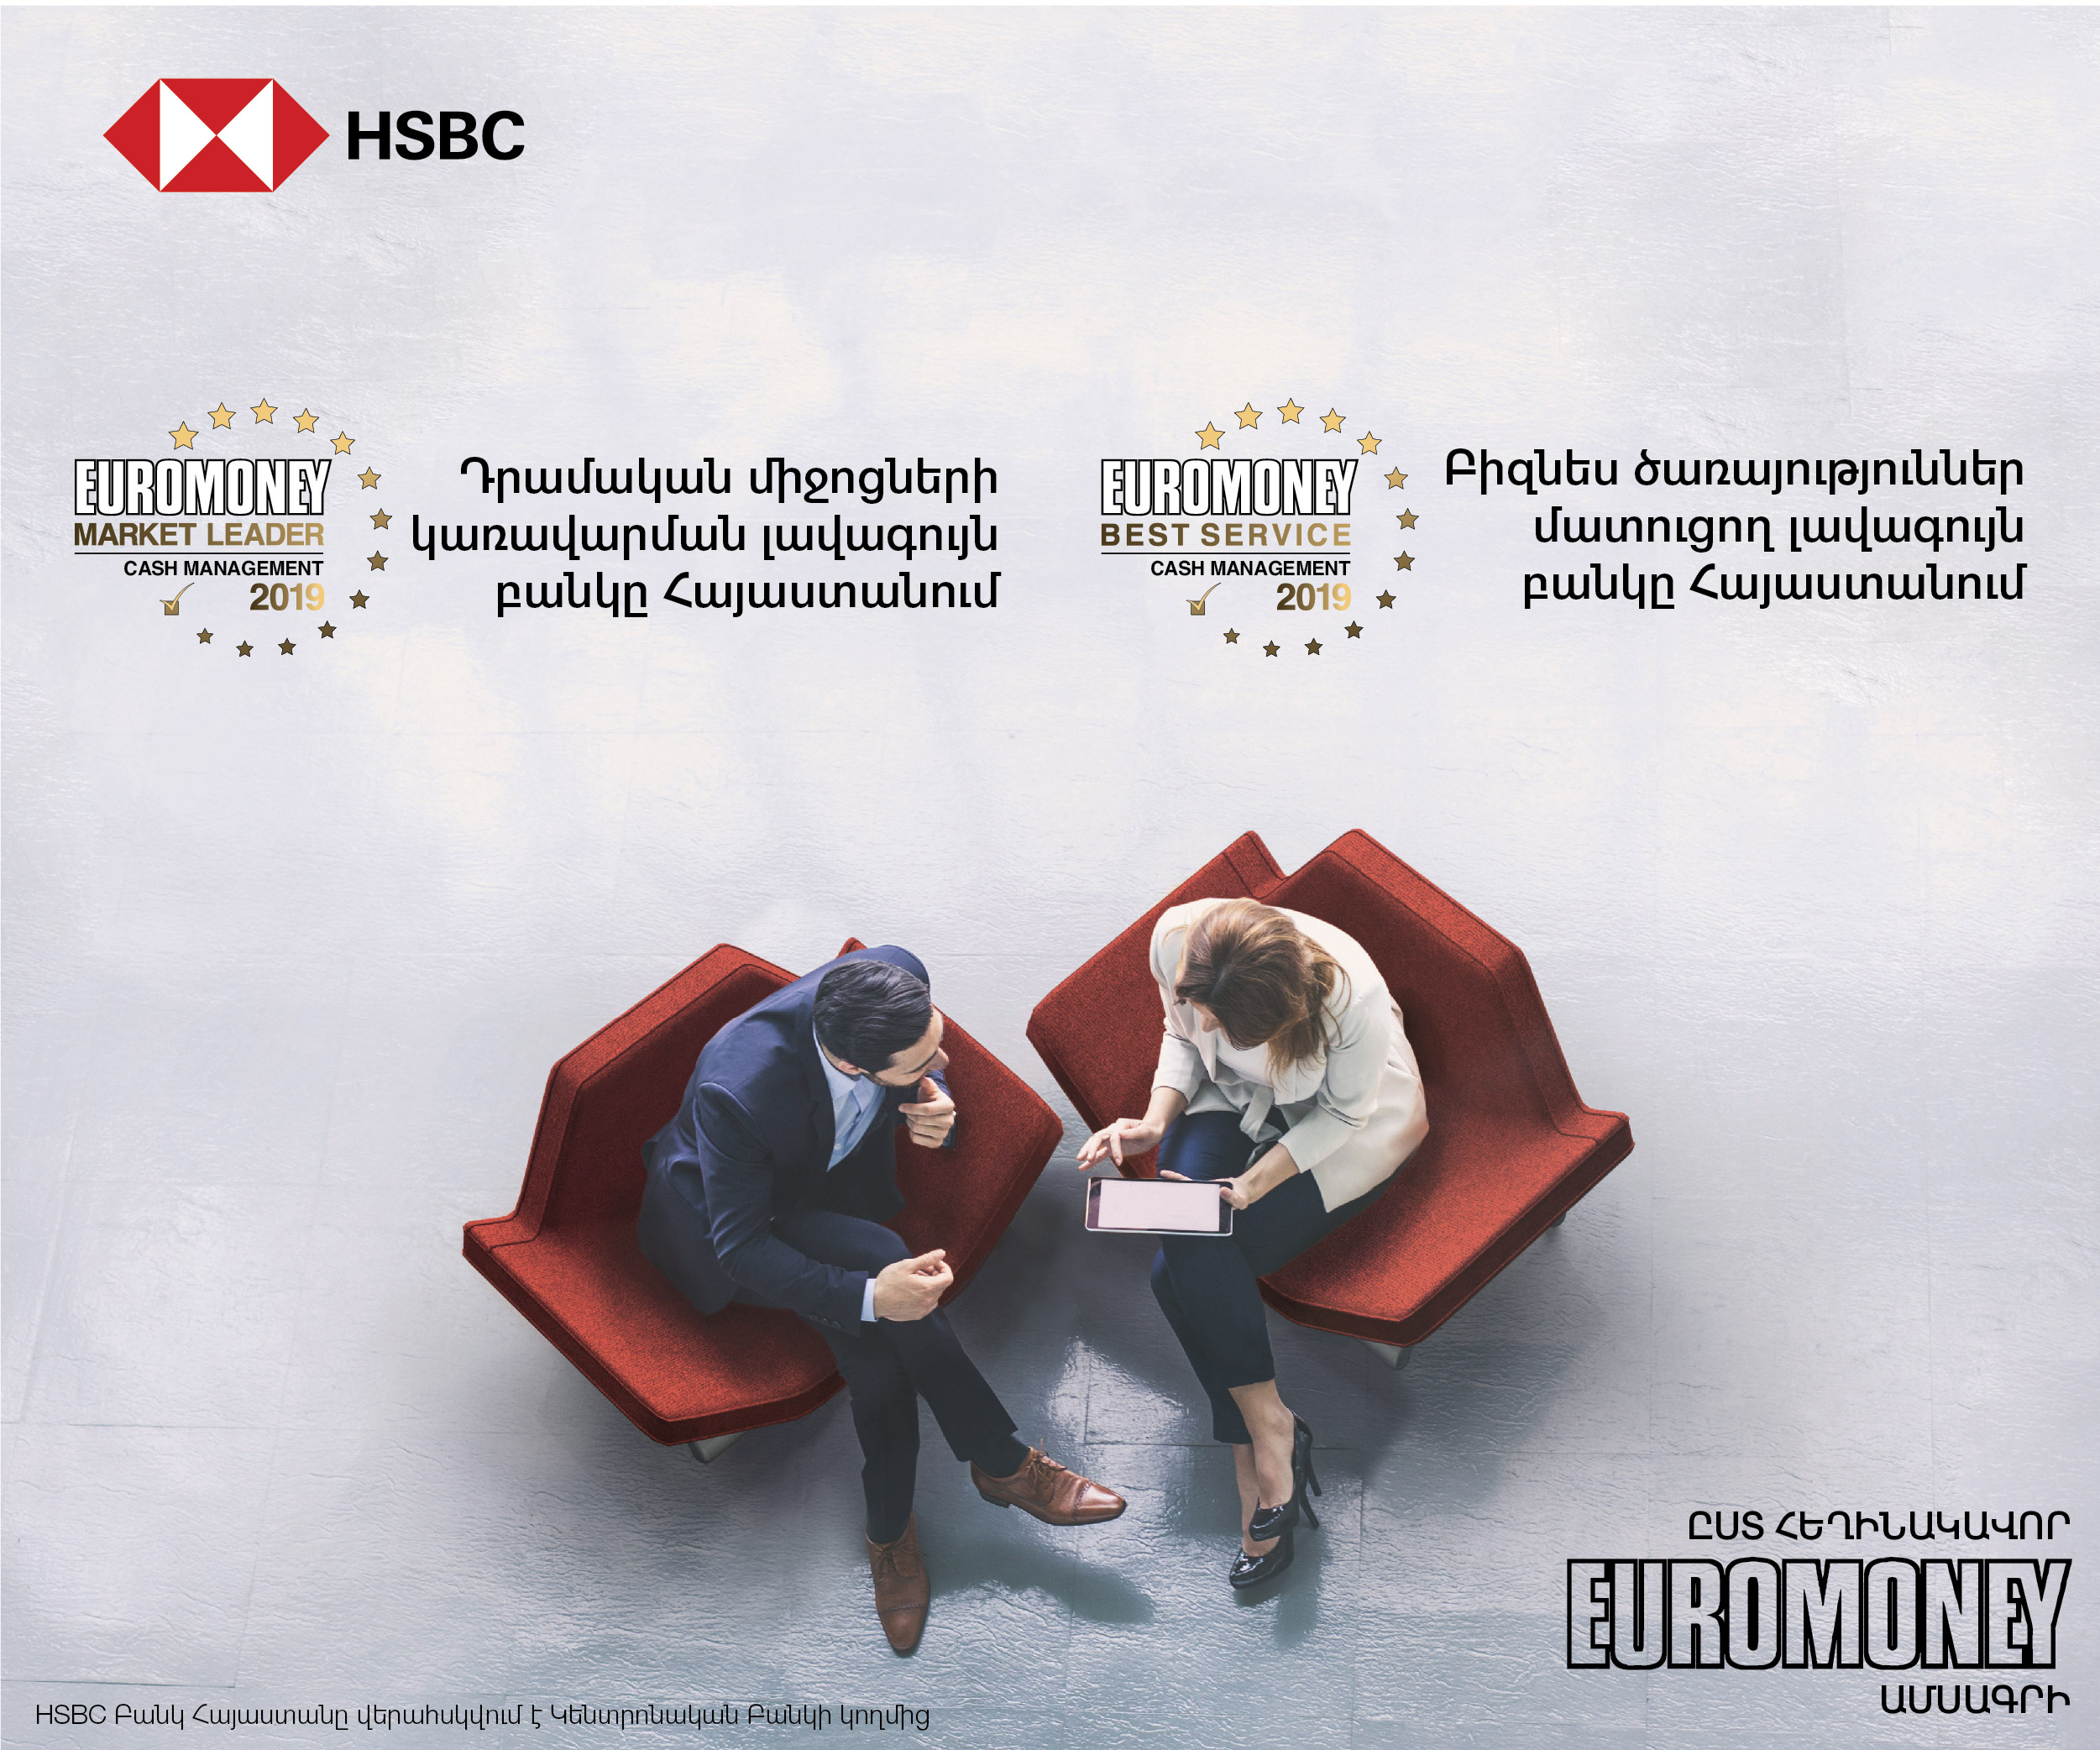 HSBC Հայաստանը` «Դրամական միջոցների կառավարման լավագույն բանկ» ըստ «Euromoney» ամսագրի